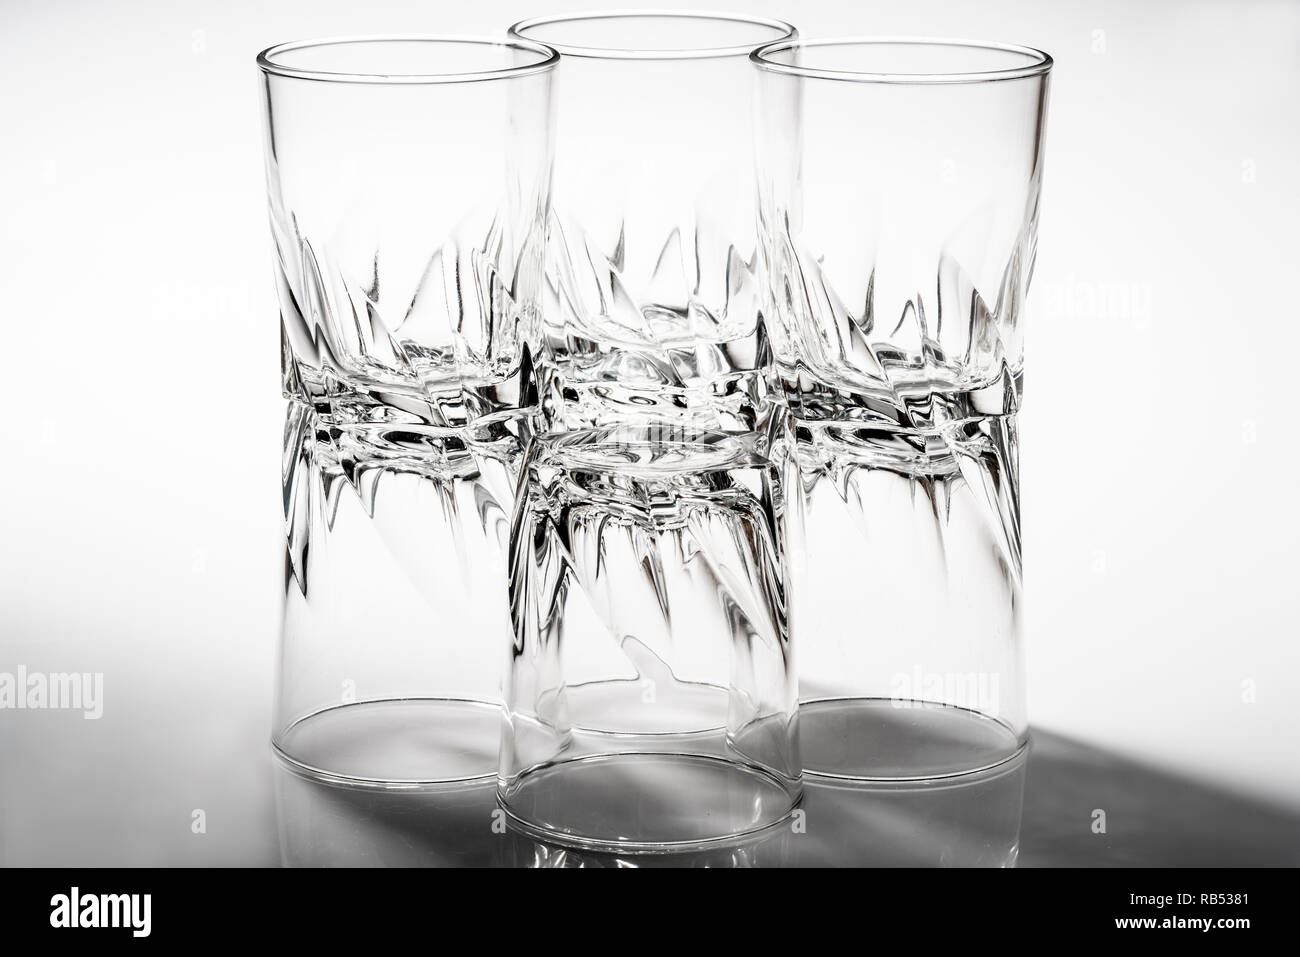 Grupo de vasos de vidrio con un pesado, robusto diseño Fotografía de stock  - Alamy